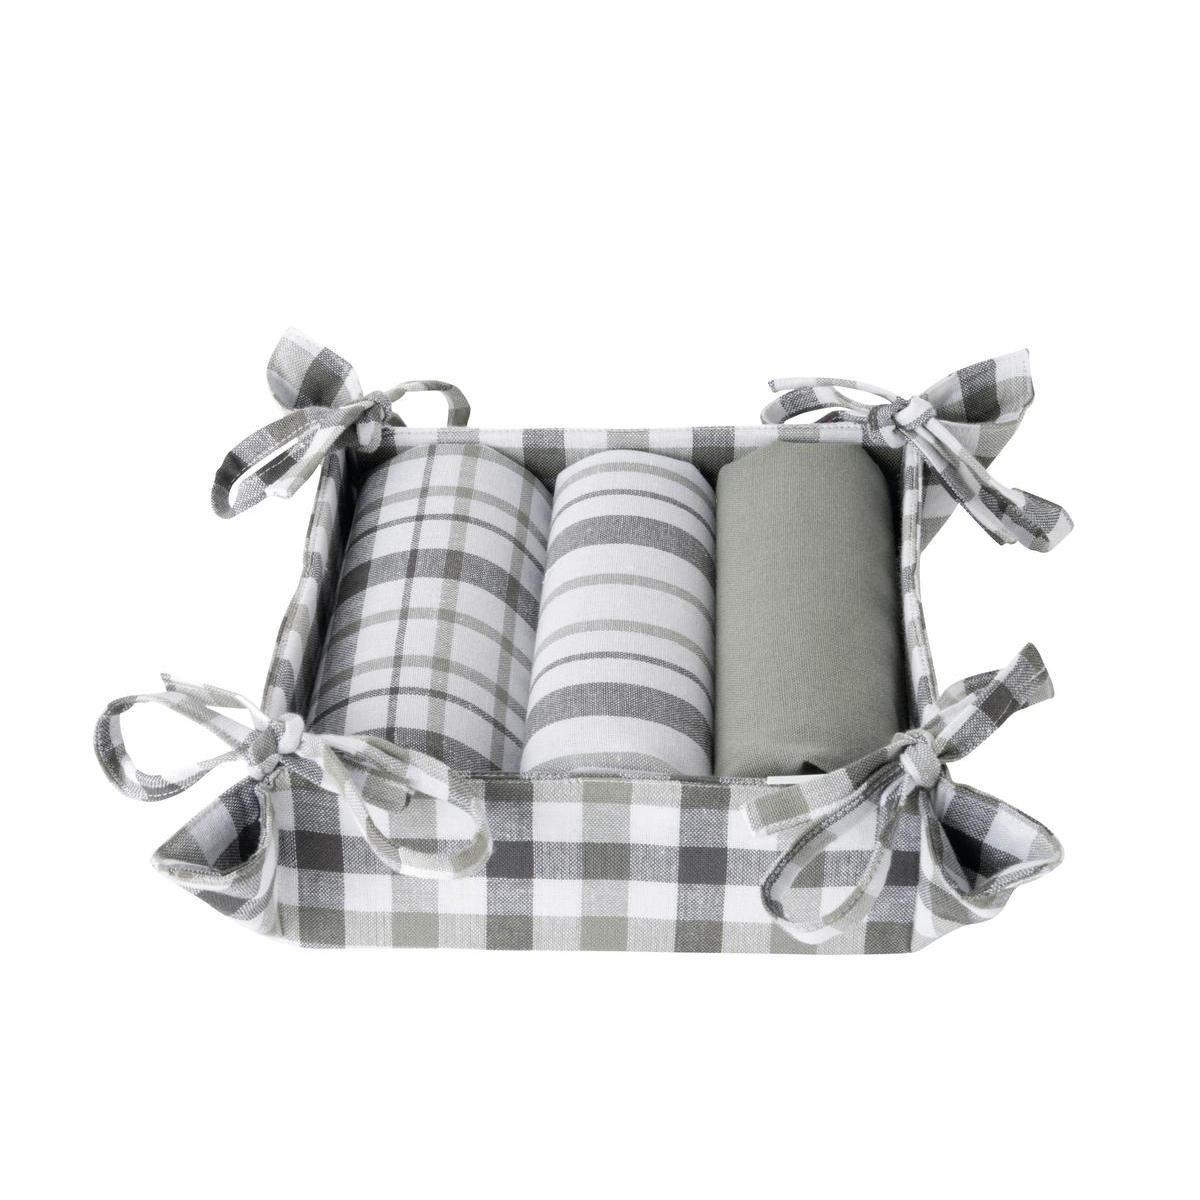 3 torchons + corbeille - Coton - 50 x 70 cm - Blanc, gris et noir